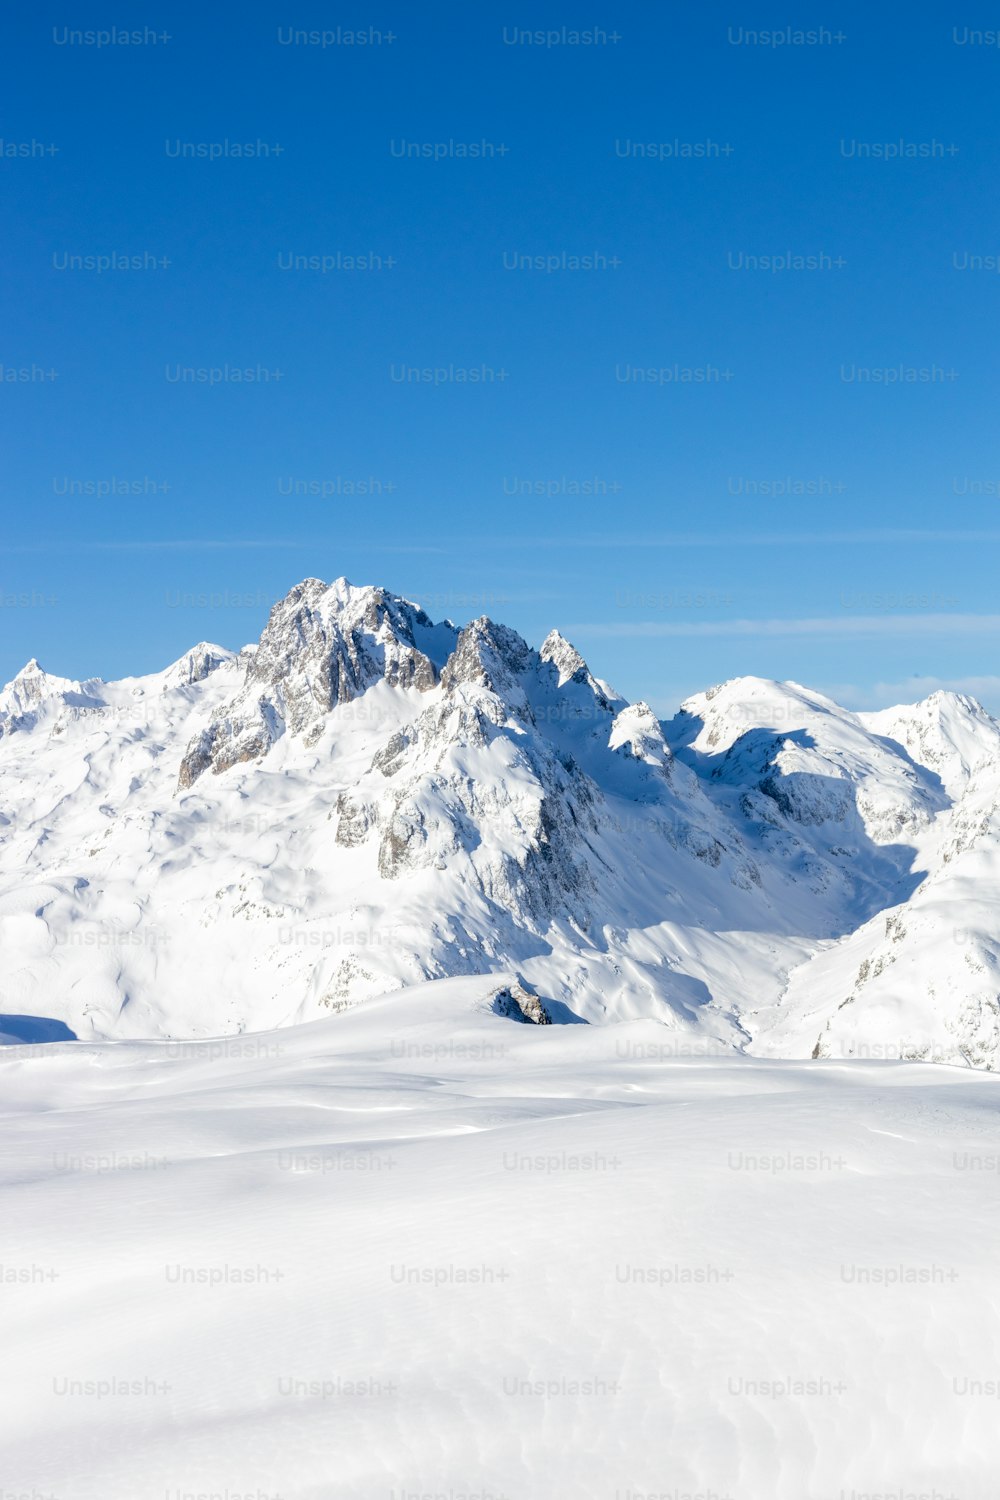 Un homme skie sur une piste enneigée